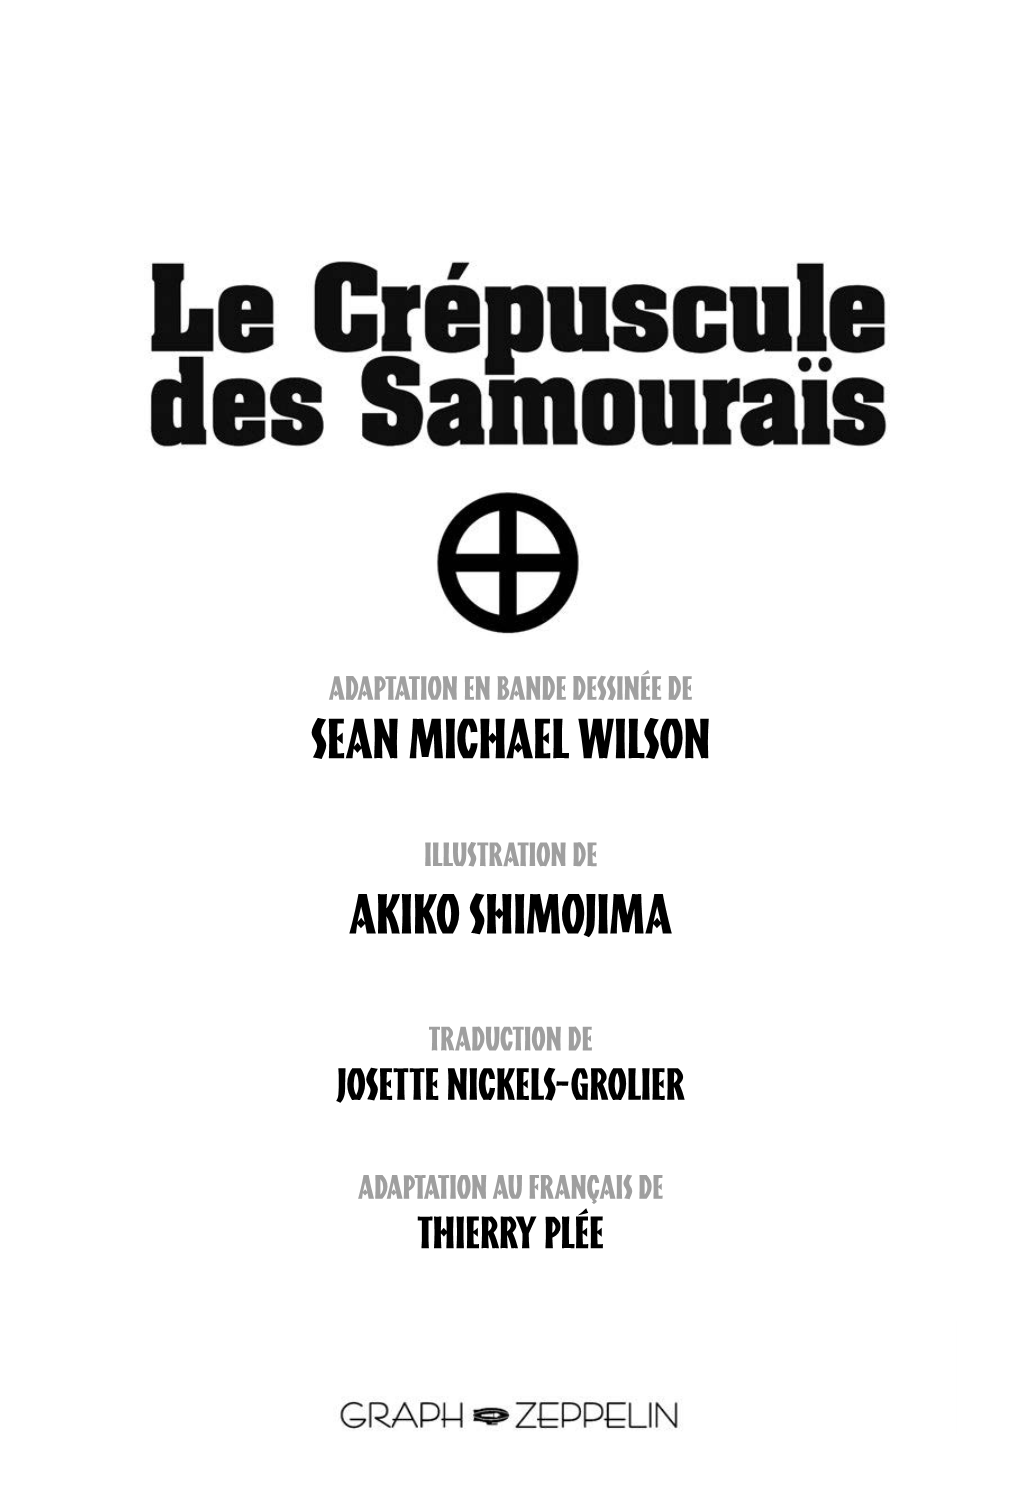 Le Crépuscule Des Samouraïs Est Le Deuxième Volet De Notre Série De Mangas Historiques